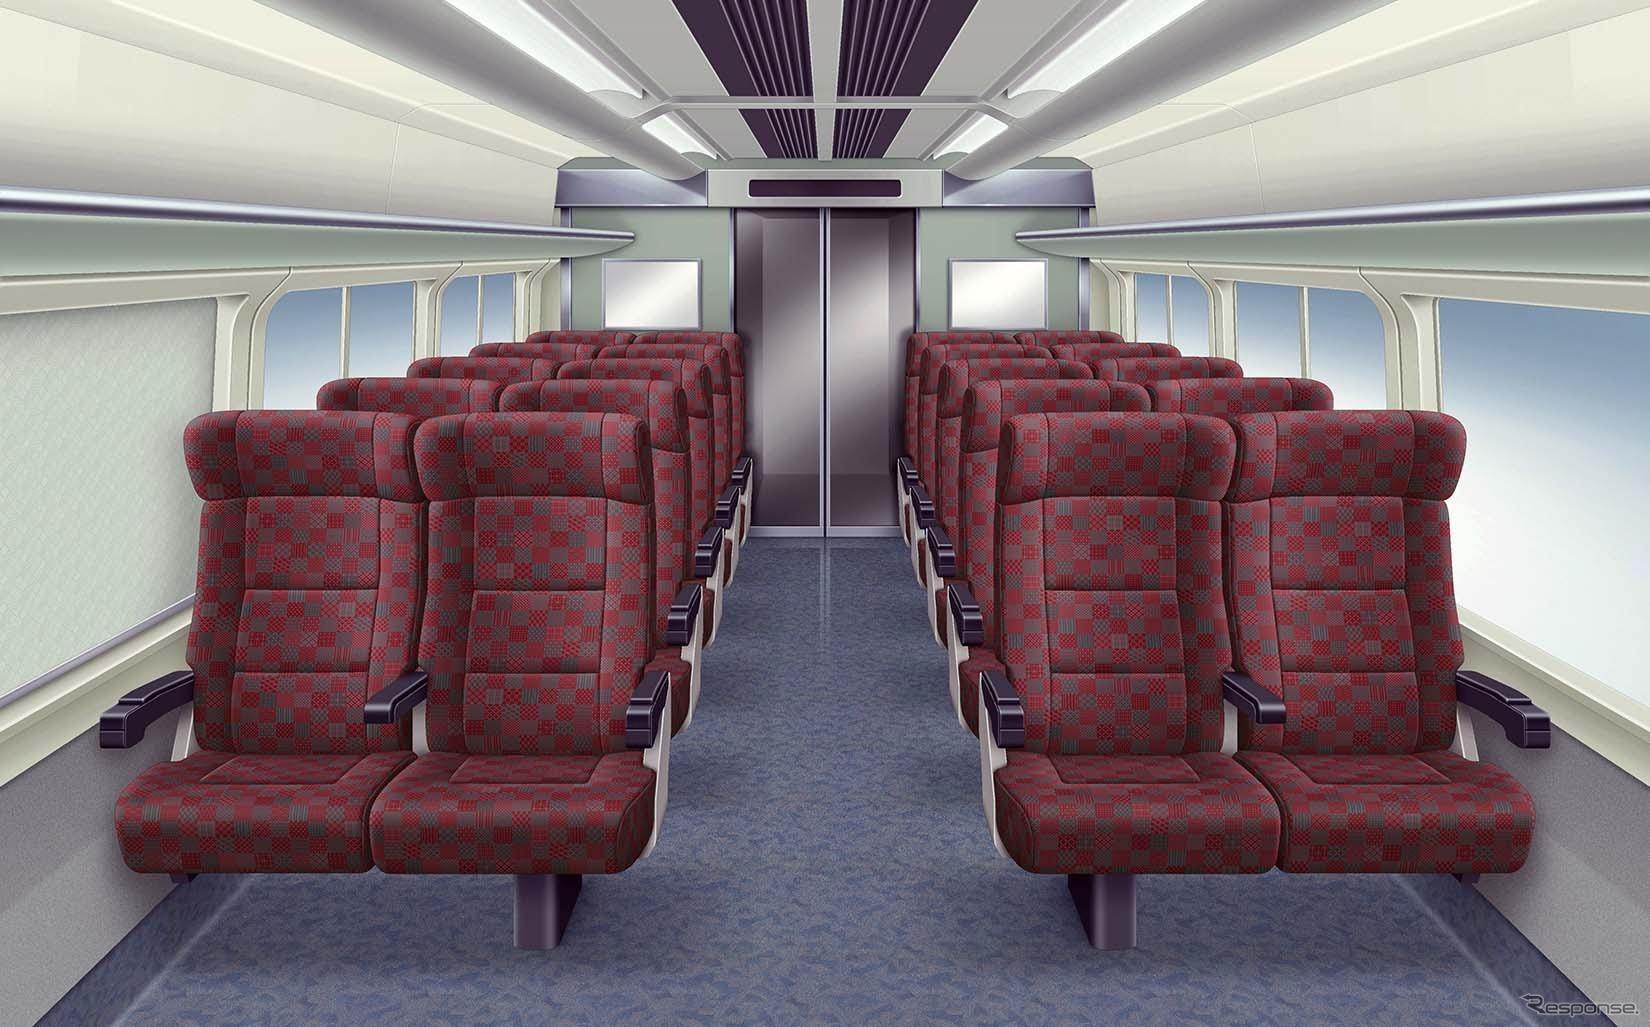 E653系1100番台の客室内イメージ。座席は北陸新幹線E7系・W7系の普通座席に使われているモケットデザインに近いものを採用する。